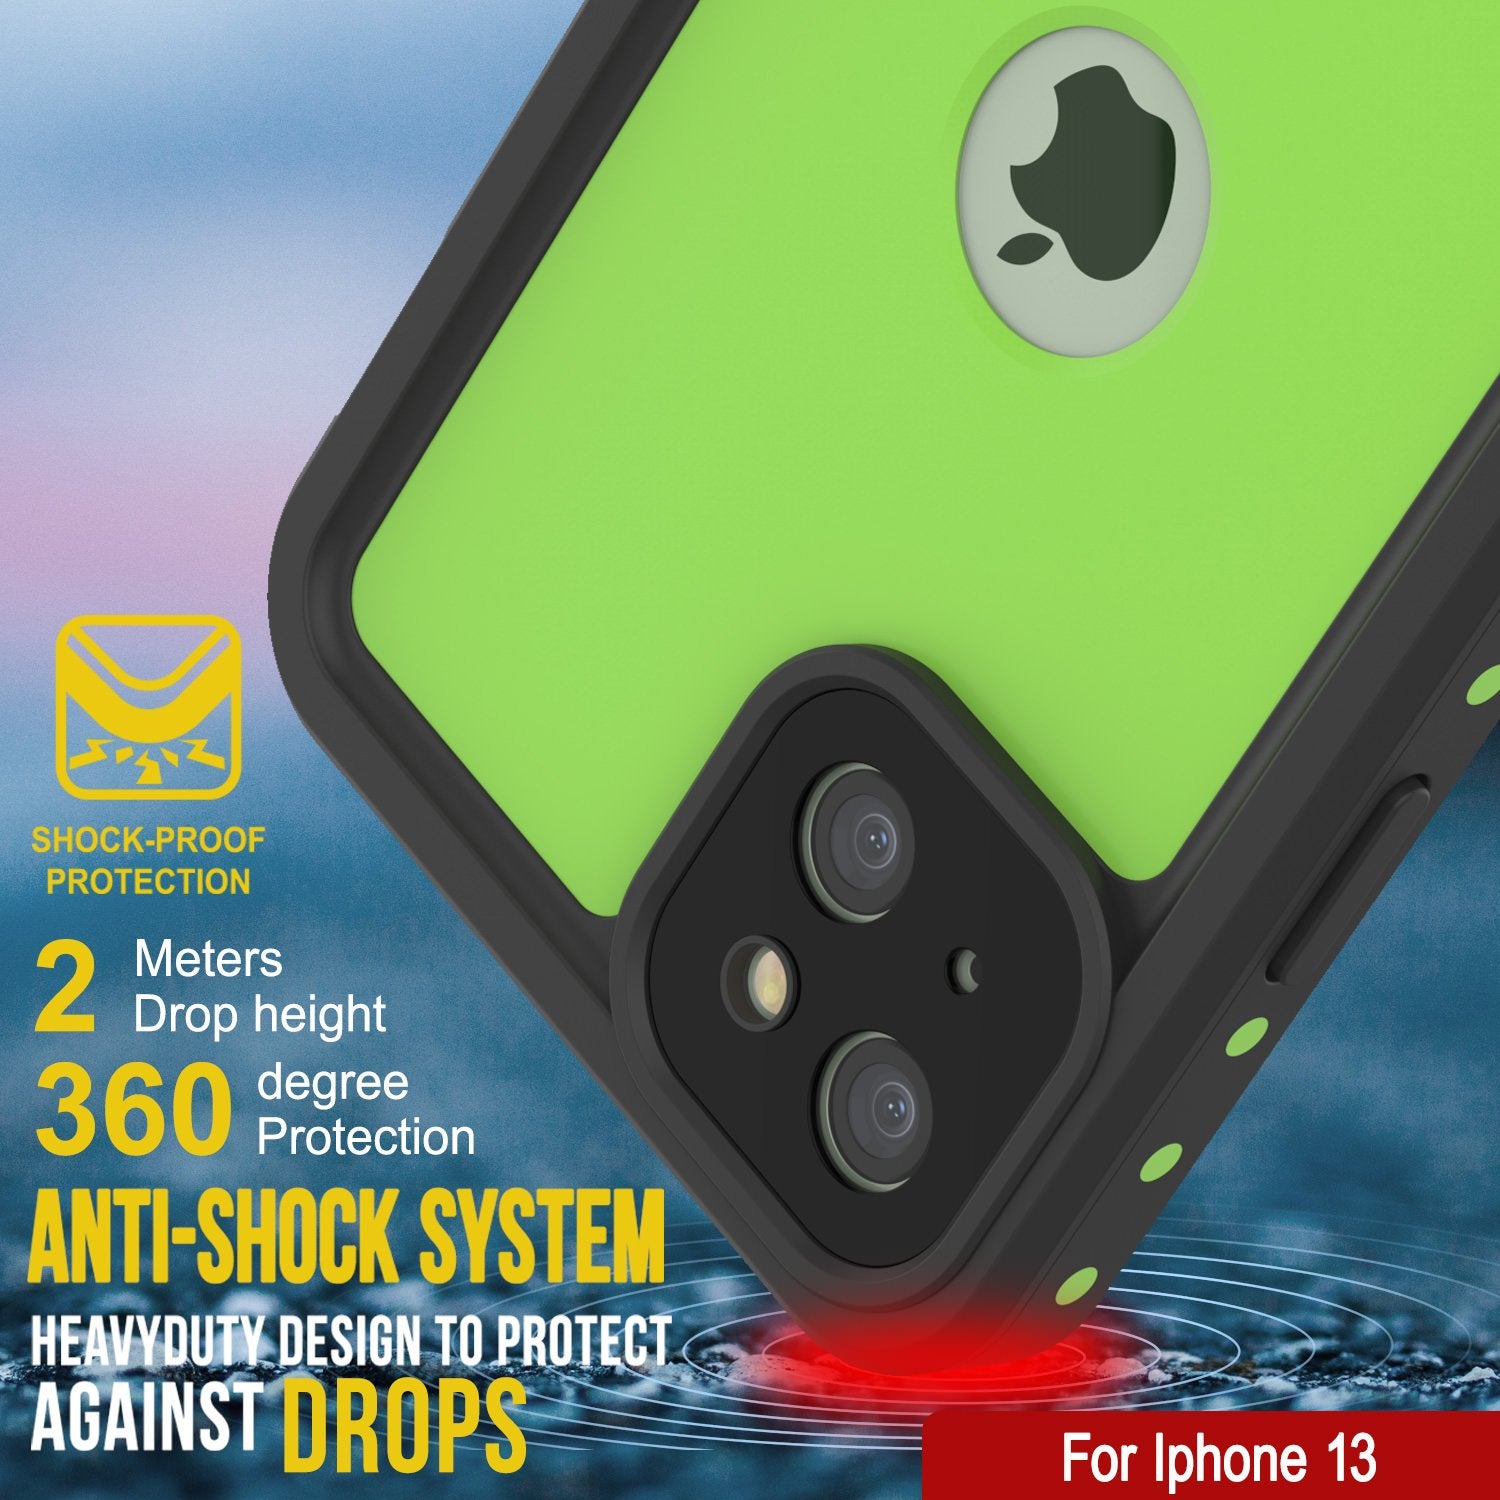 iPhone 13 Waterproof IP68 Case, Punkcase [Light green] [StudStar Series] [Slim Fit] [Dirtproof]